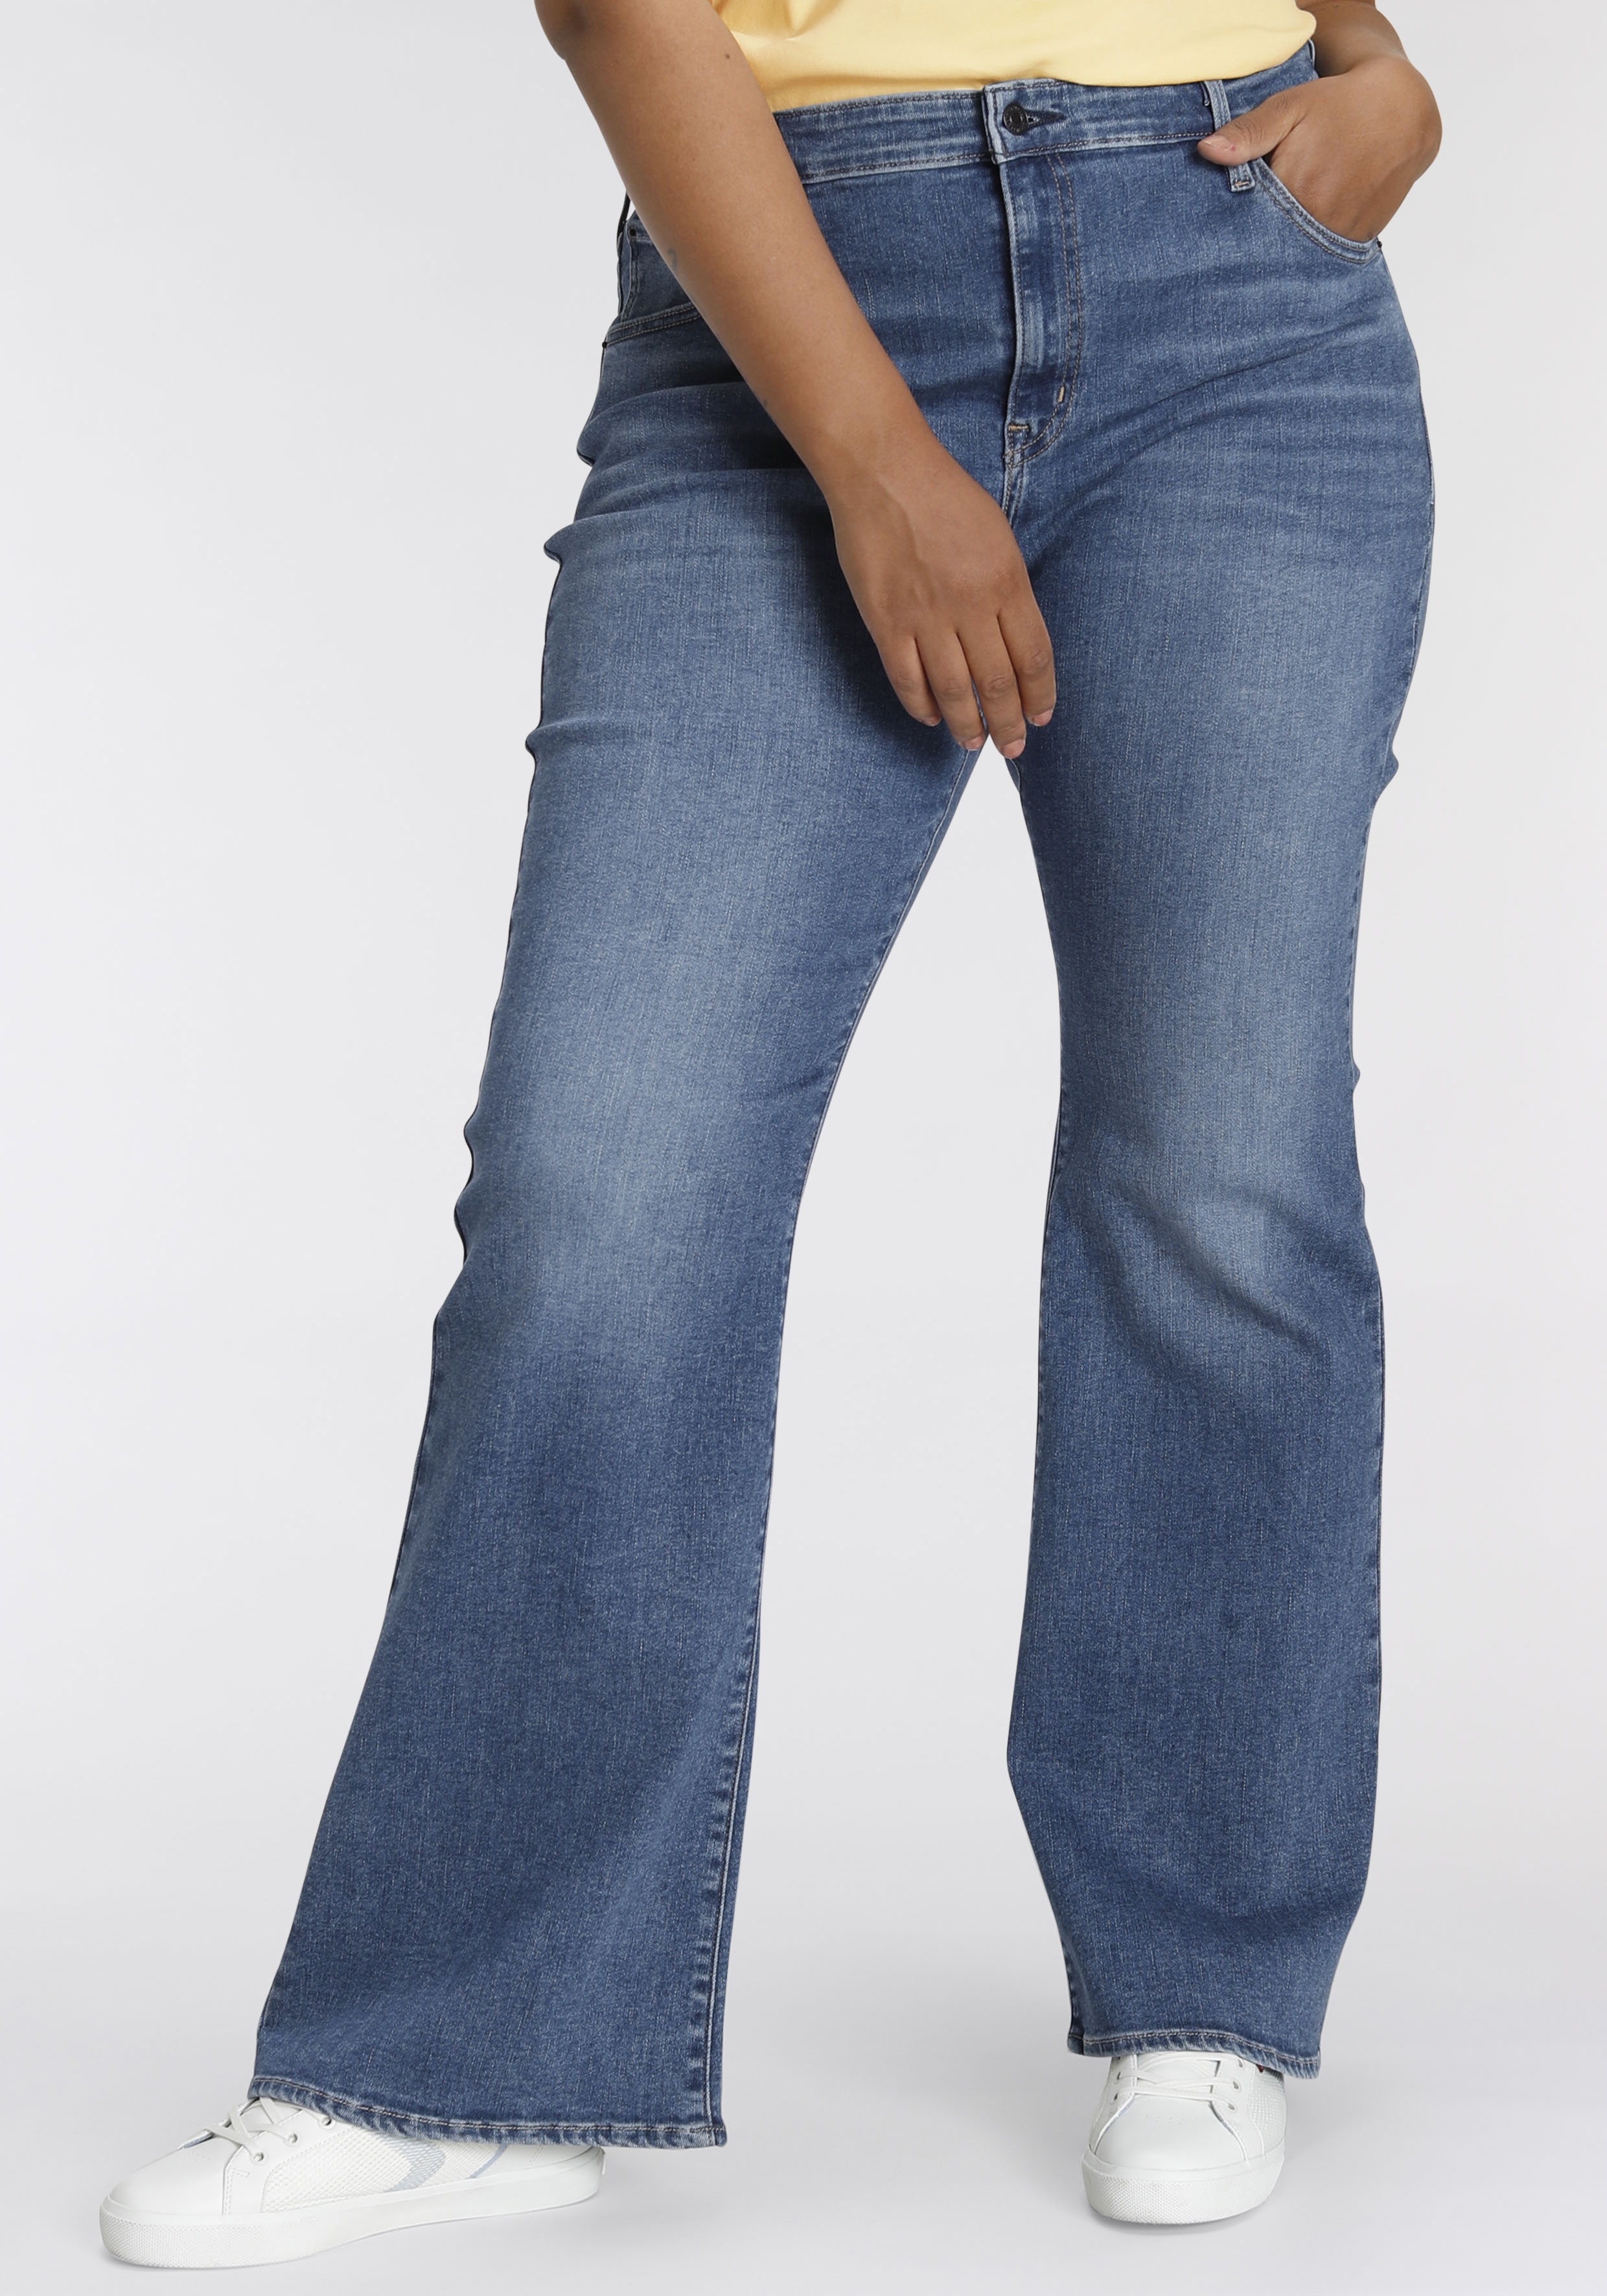 Bootcut-Jeans LEVI'S PLUS "726 PL HR FLARE" Gr. 22 (52), Länge 30, blau (mid blue denim wash) Damen Jeans Bootcut